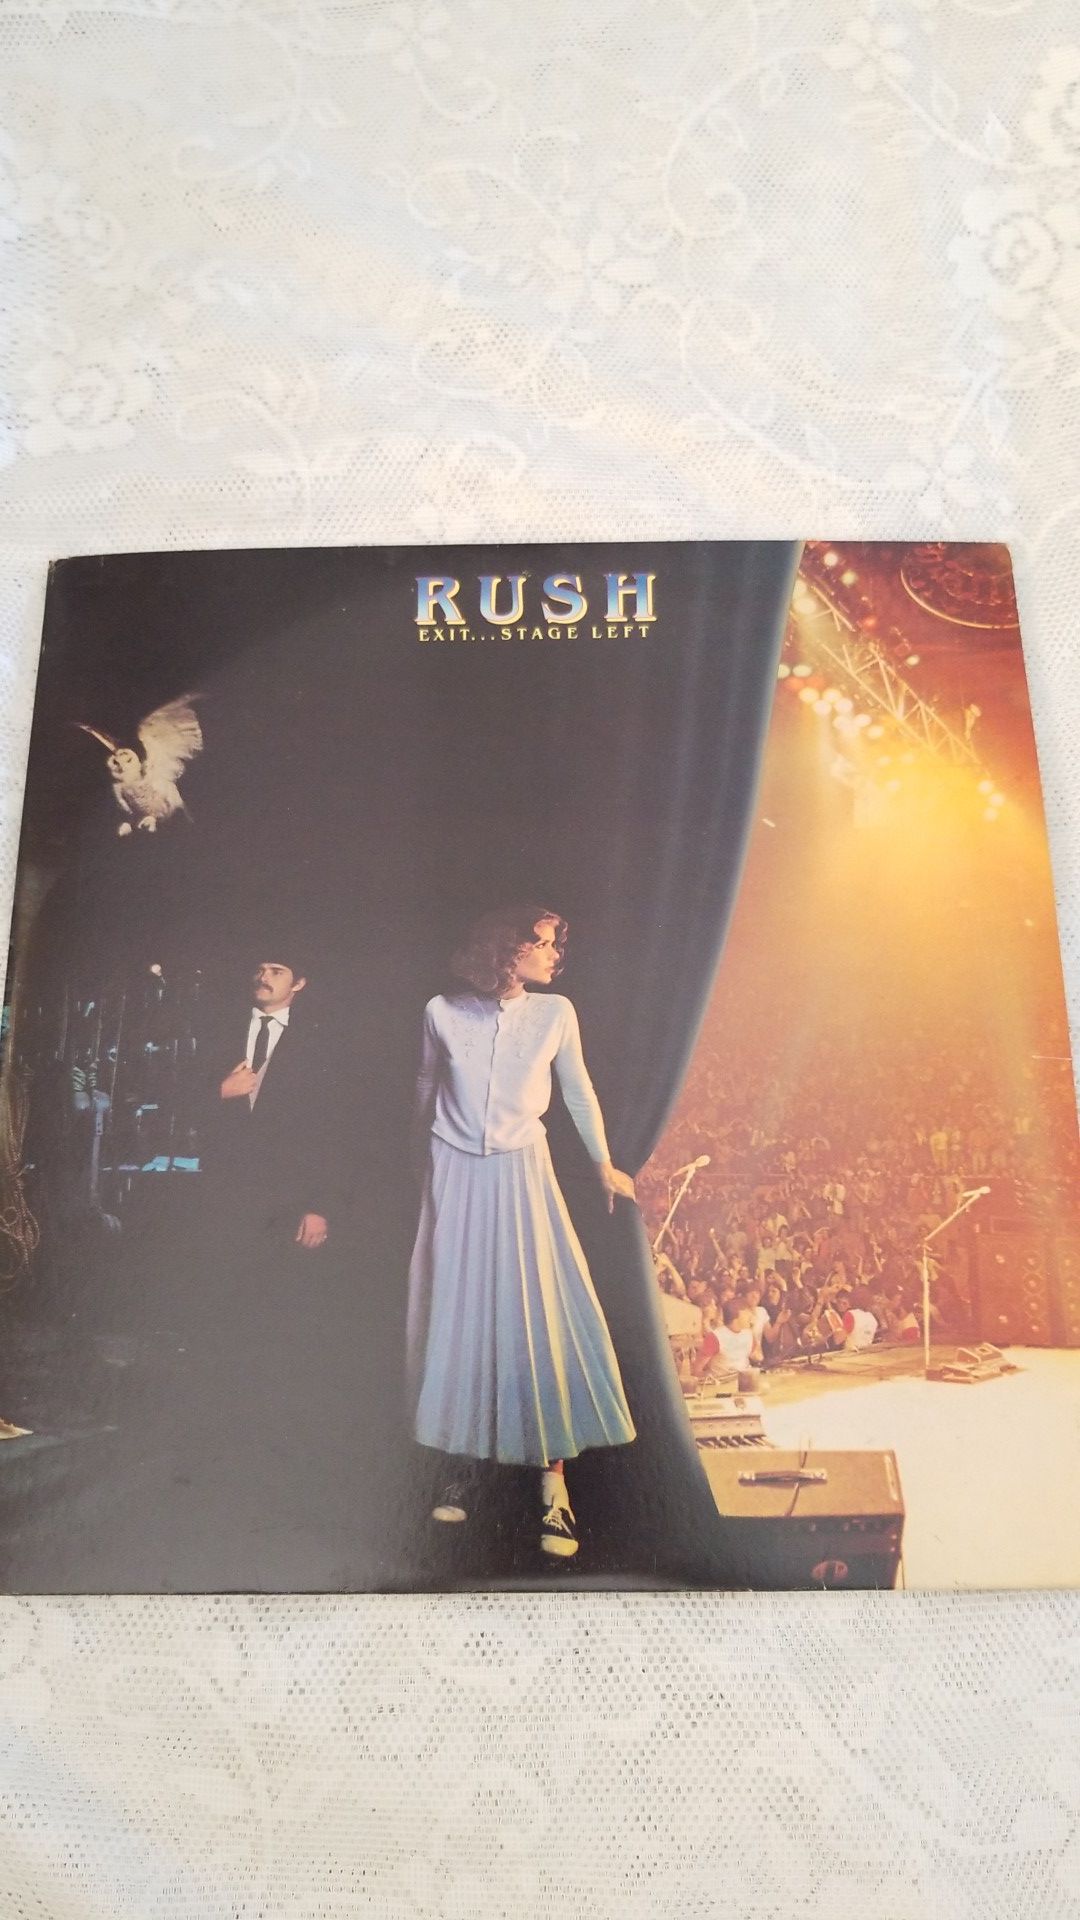 RUSH EXIT... STAGE LEFT VINYL LP RECORD ALBUM